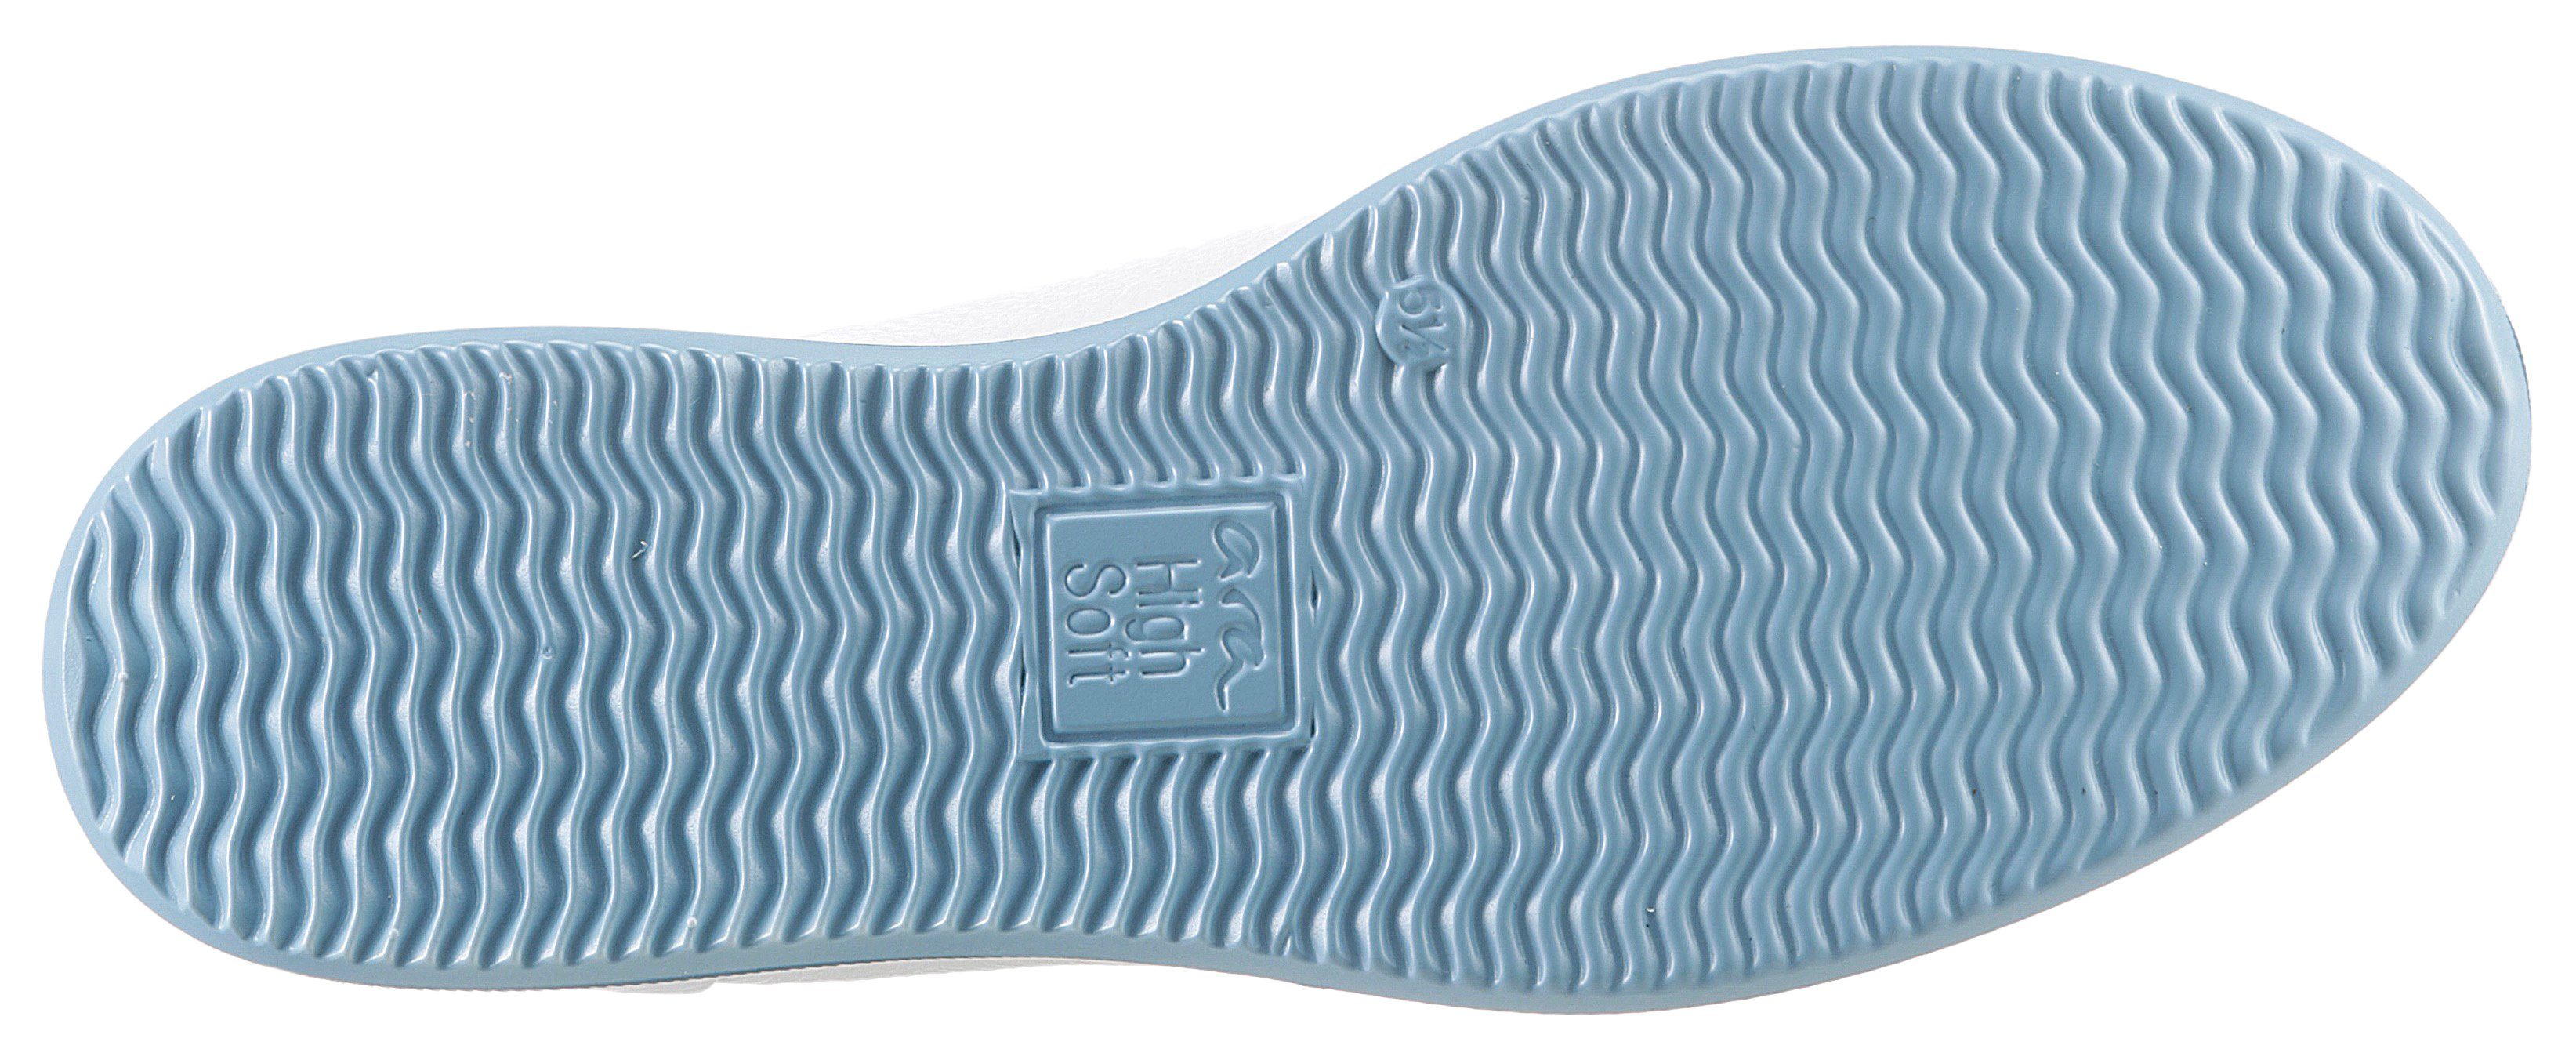 Ara High Fußbett, ROMA mit weiß G-Weite Sneaker Soft